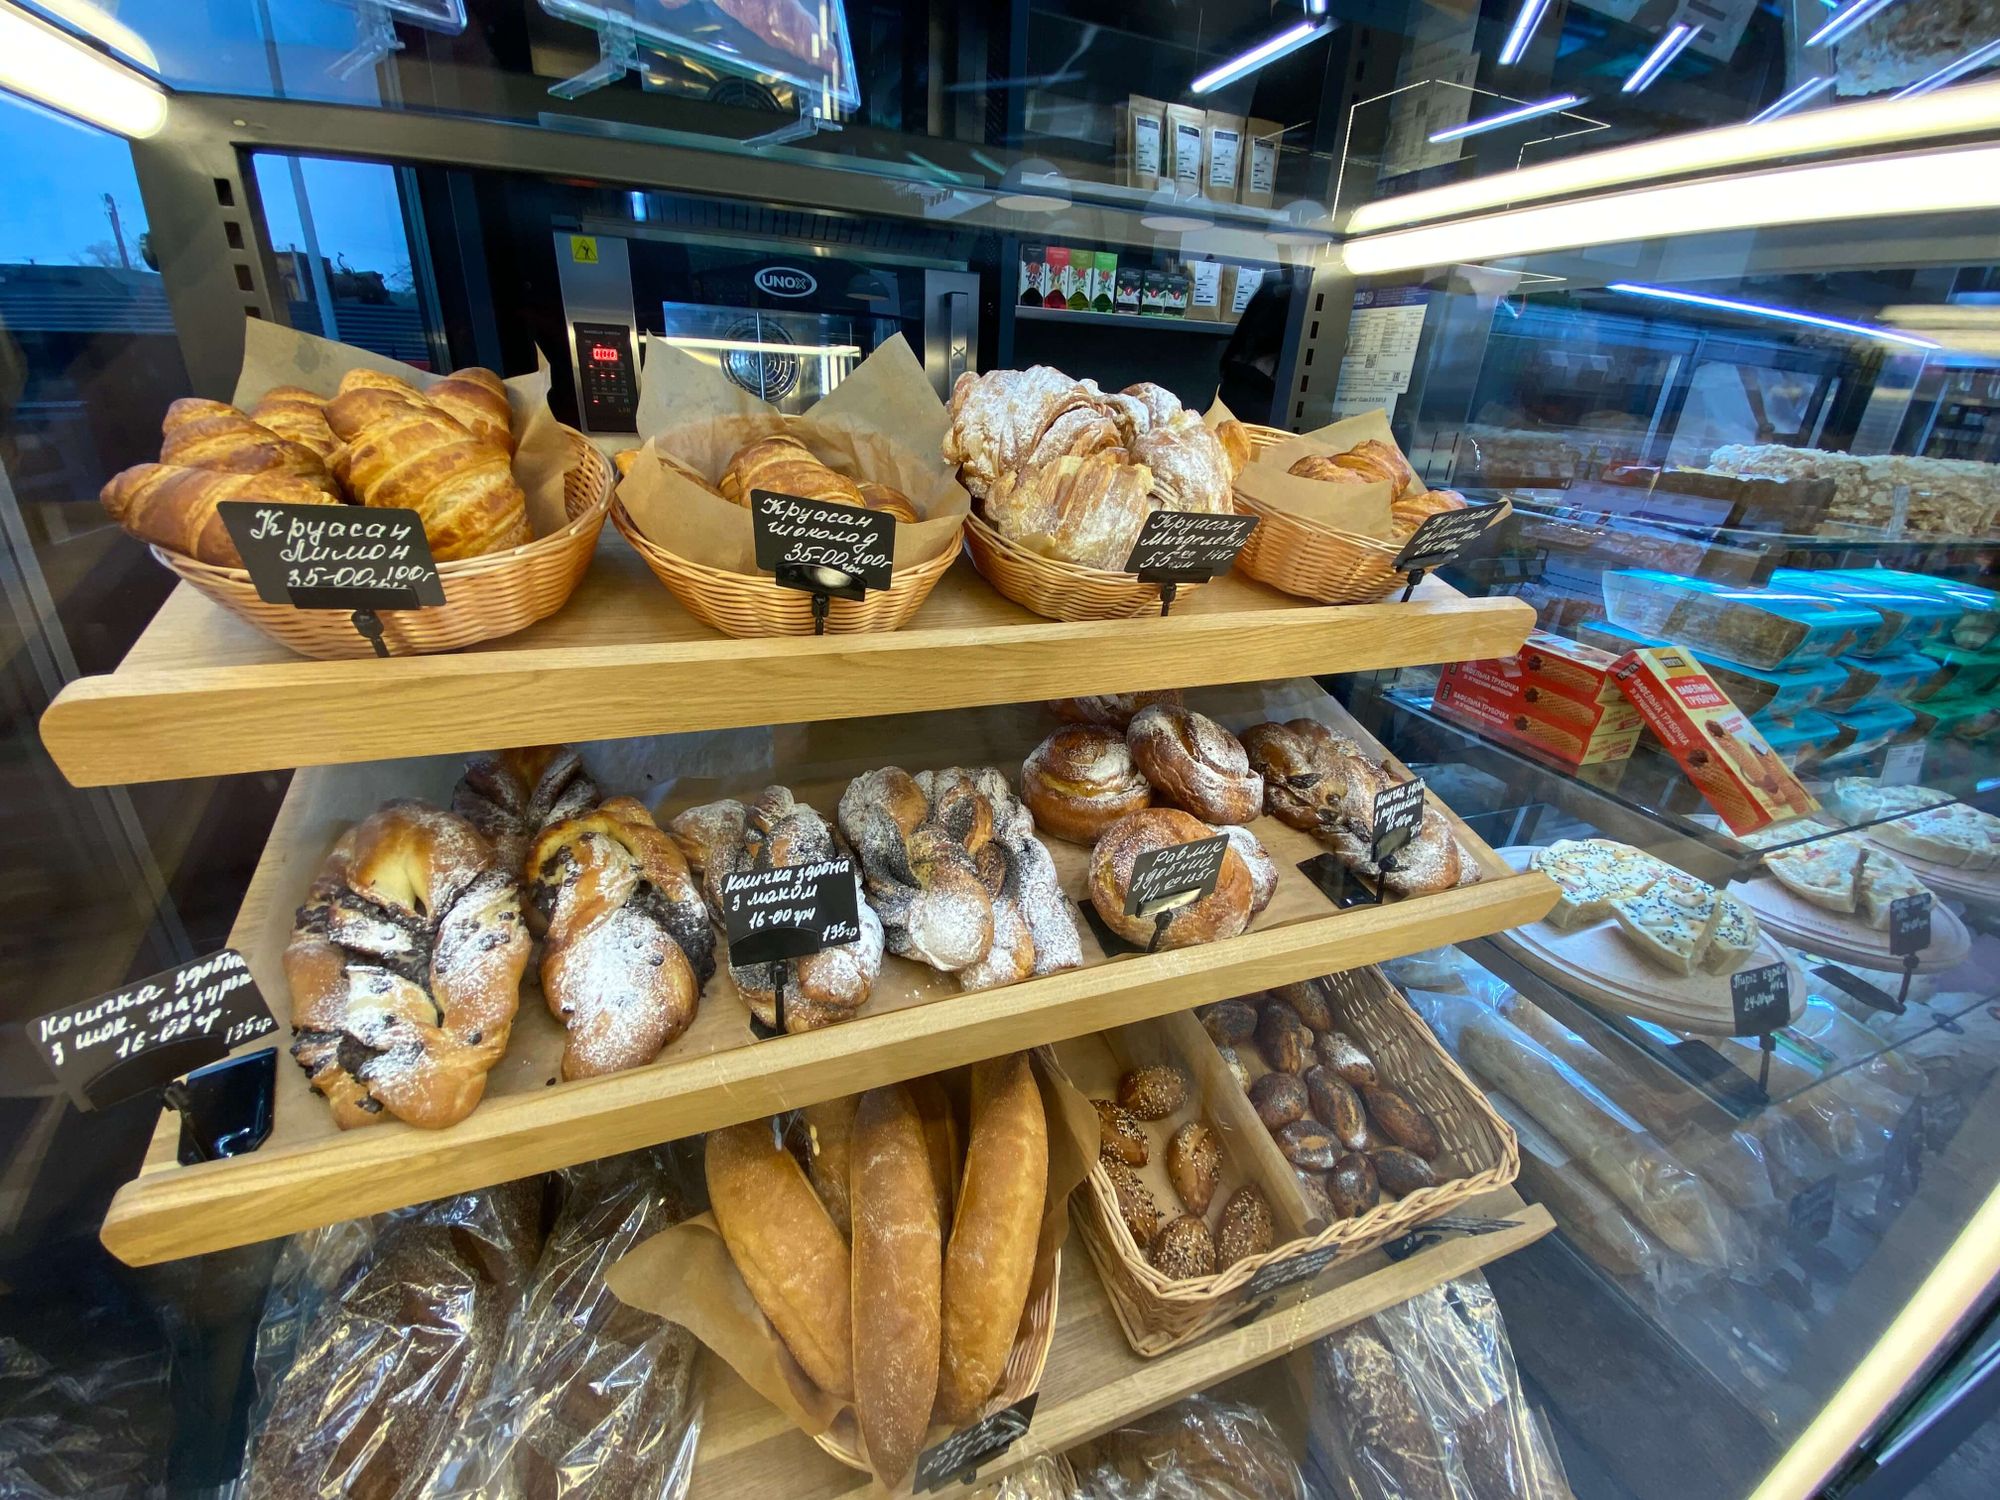 В продаже на АЗС есть хлеб ручной работы на закваске – ржаной, солодовый, пшеничный, гречневый и льняной